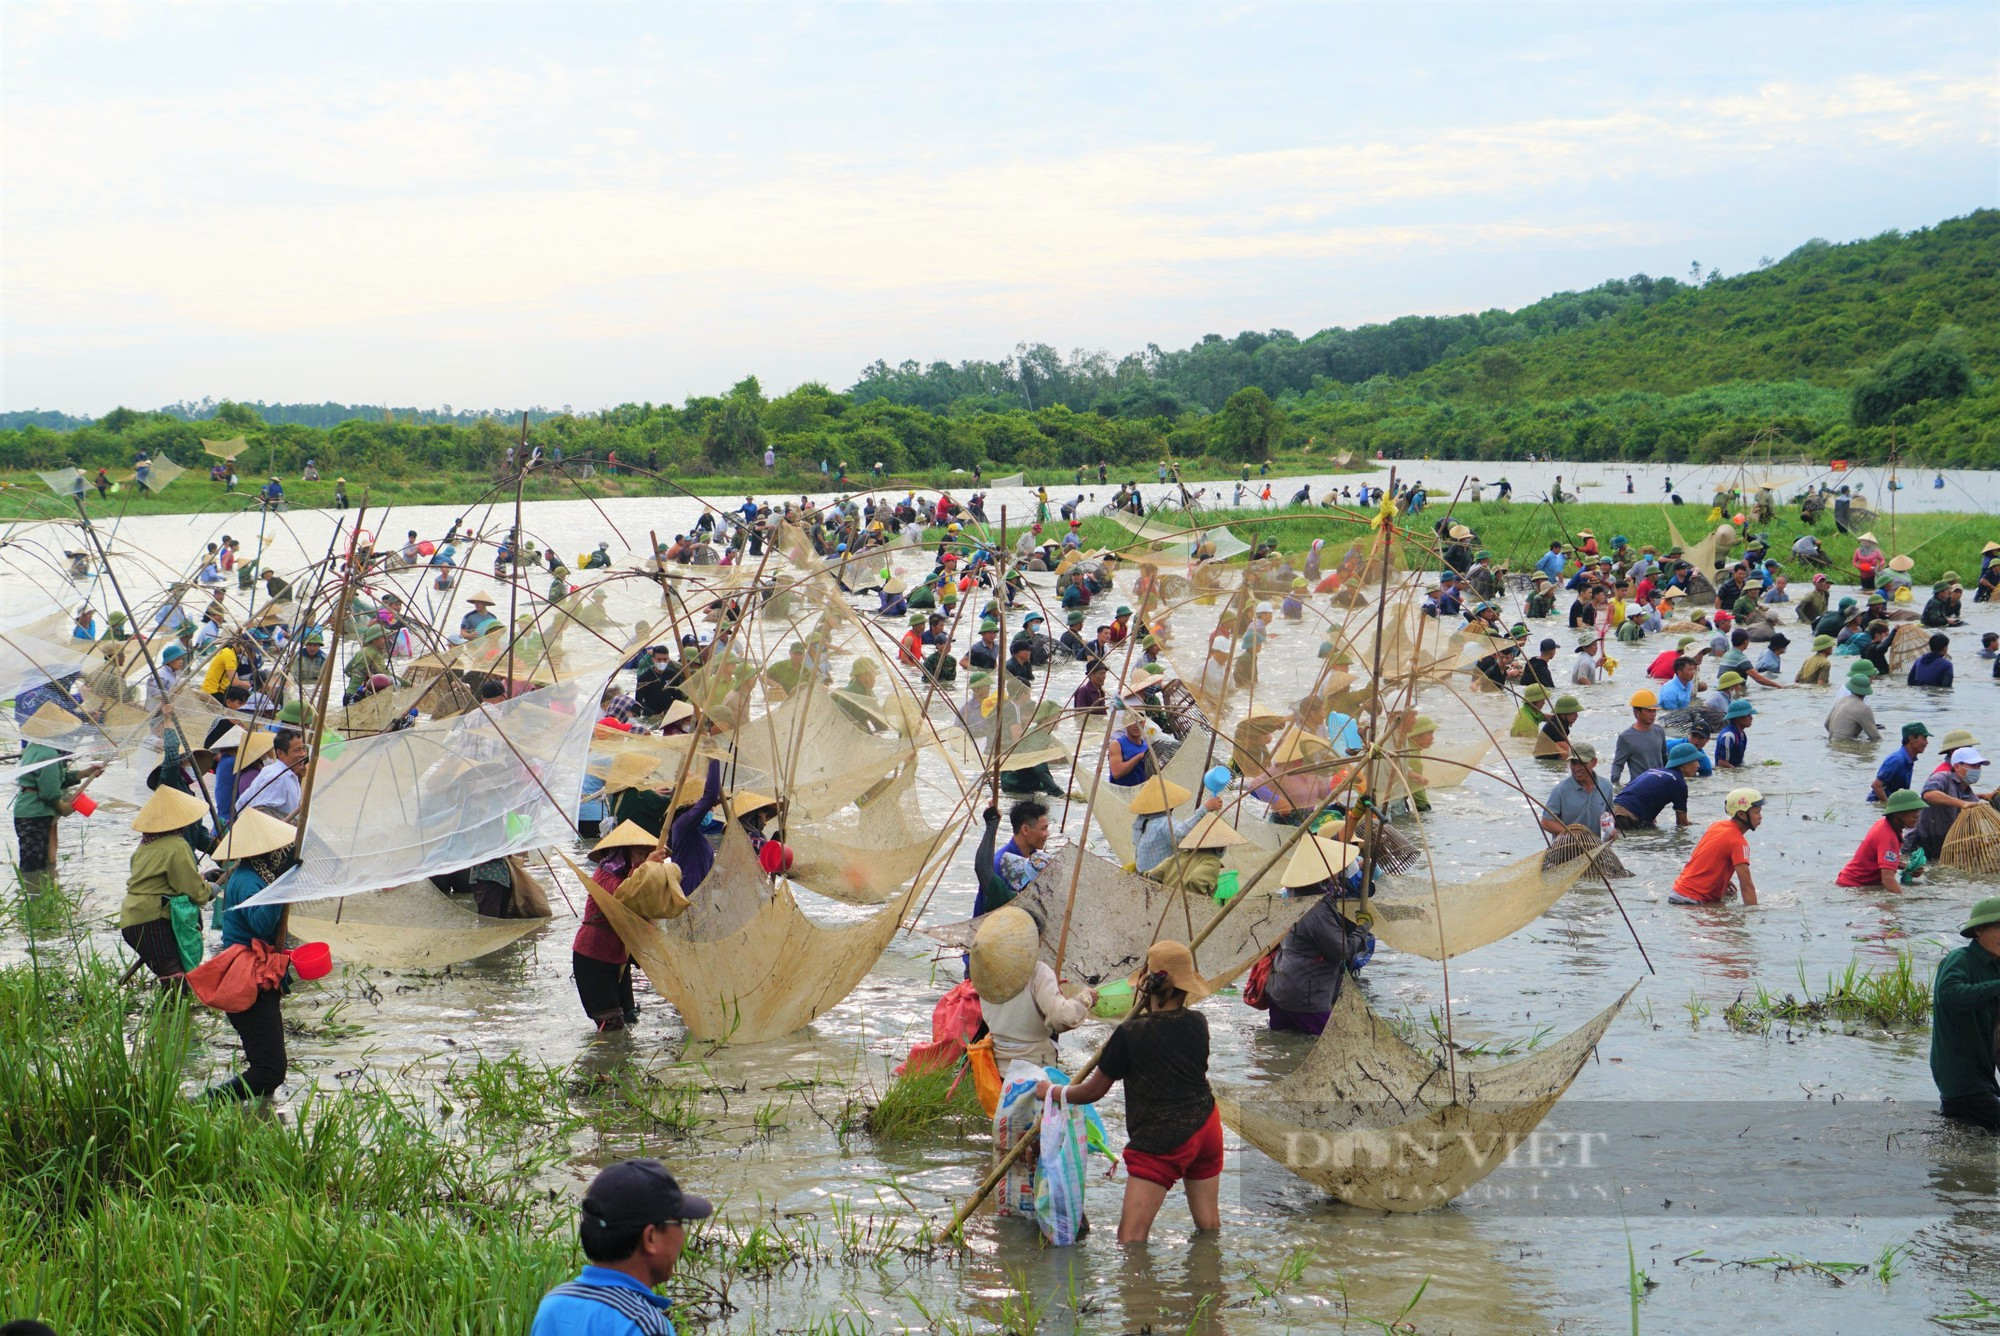 Lễ hội bắt cá Vực Rào tồn tại trên 300 năm ở Hà Tĩnh bắt nguồn từ đâu? - Ảnh 7.